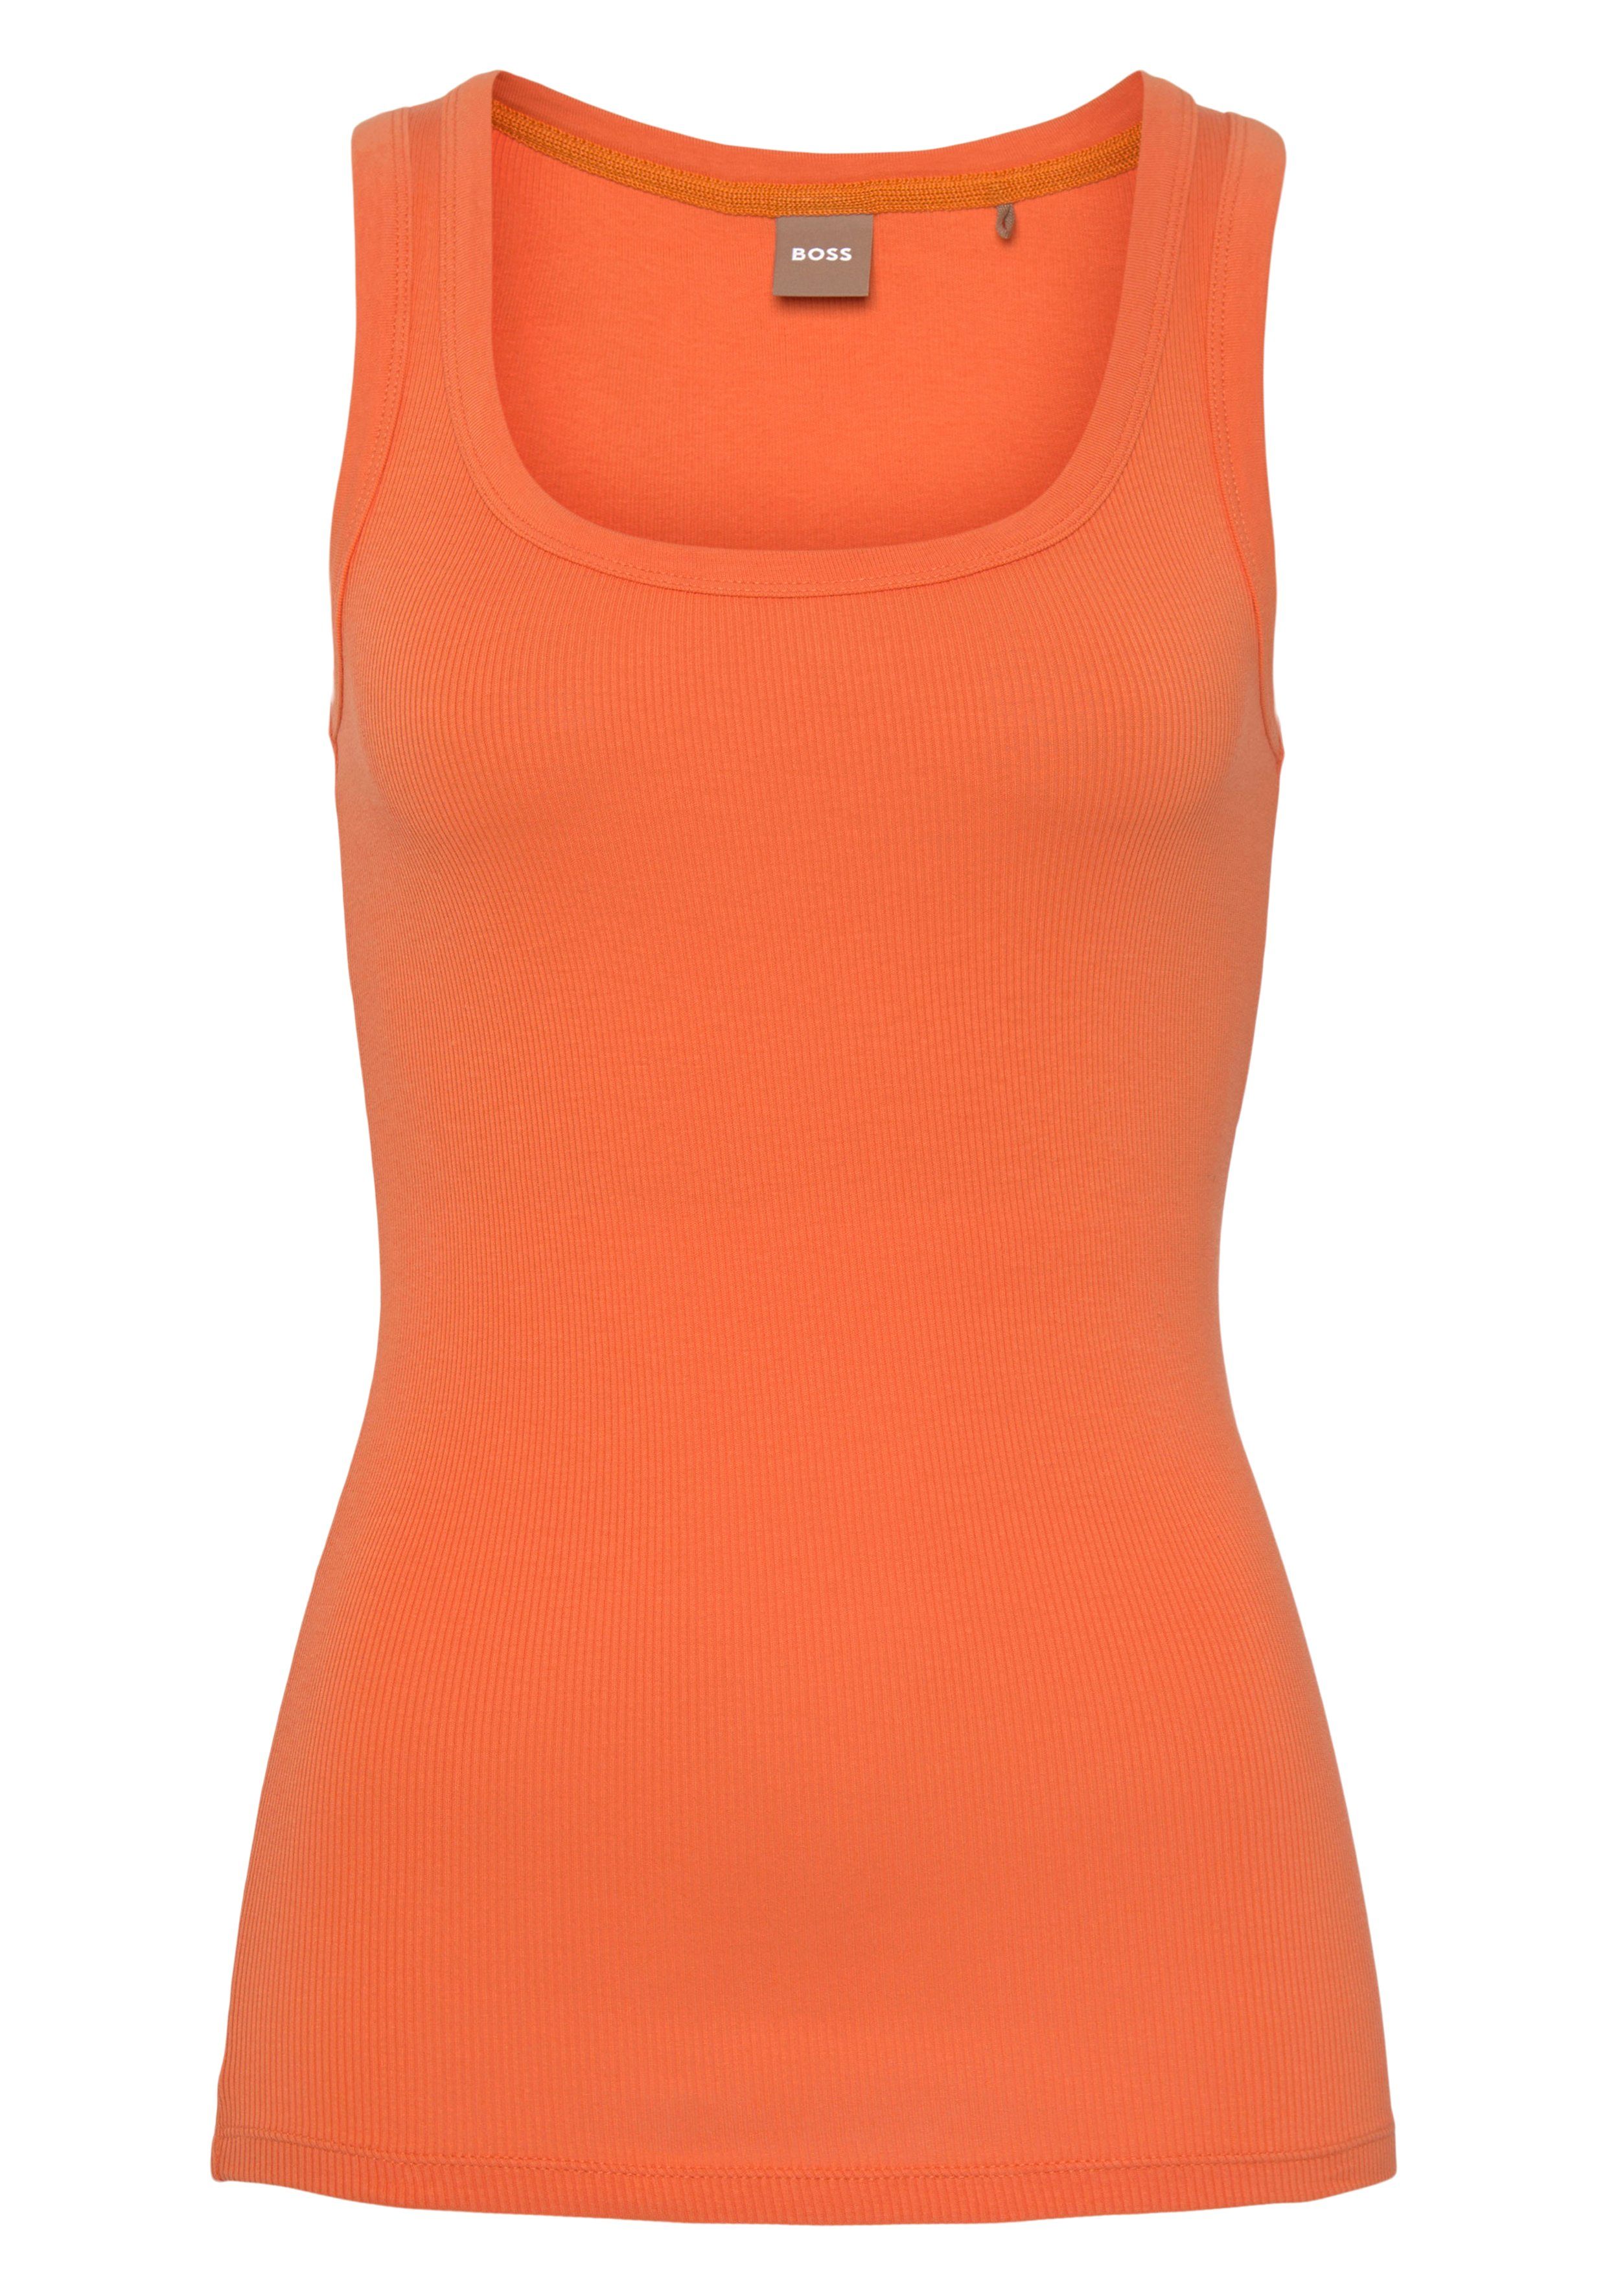 BOSS Markenstreifen Muskelshirt ORANGE mit Bright_Orange innen BOSS